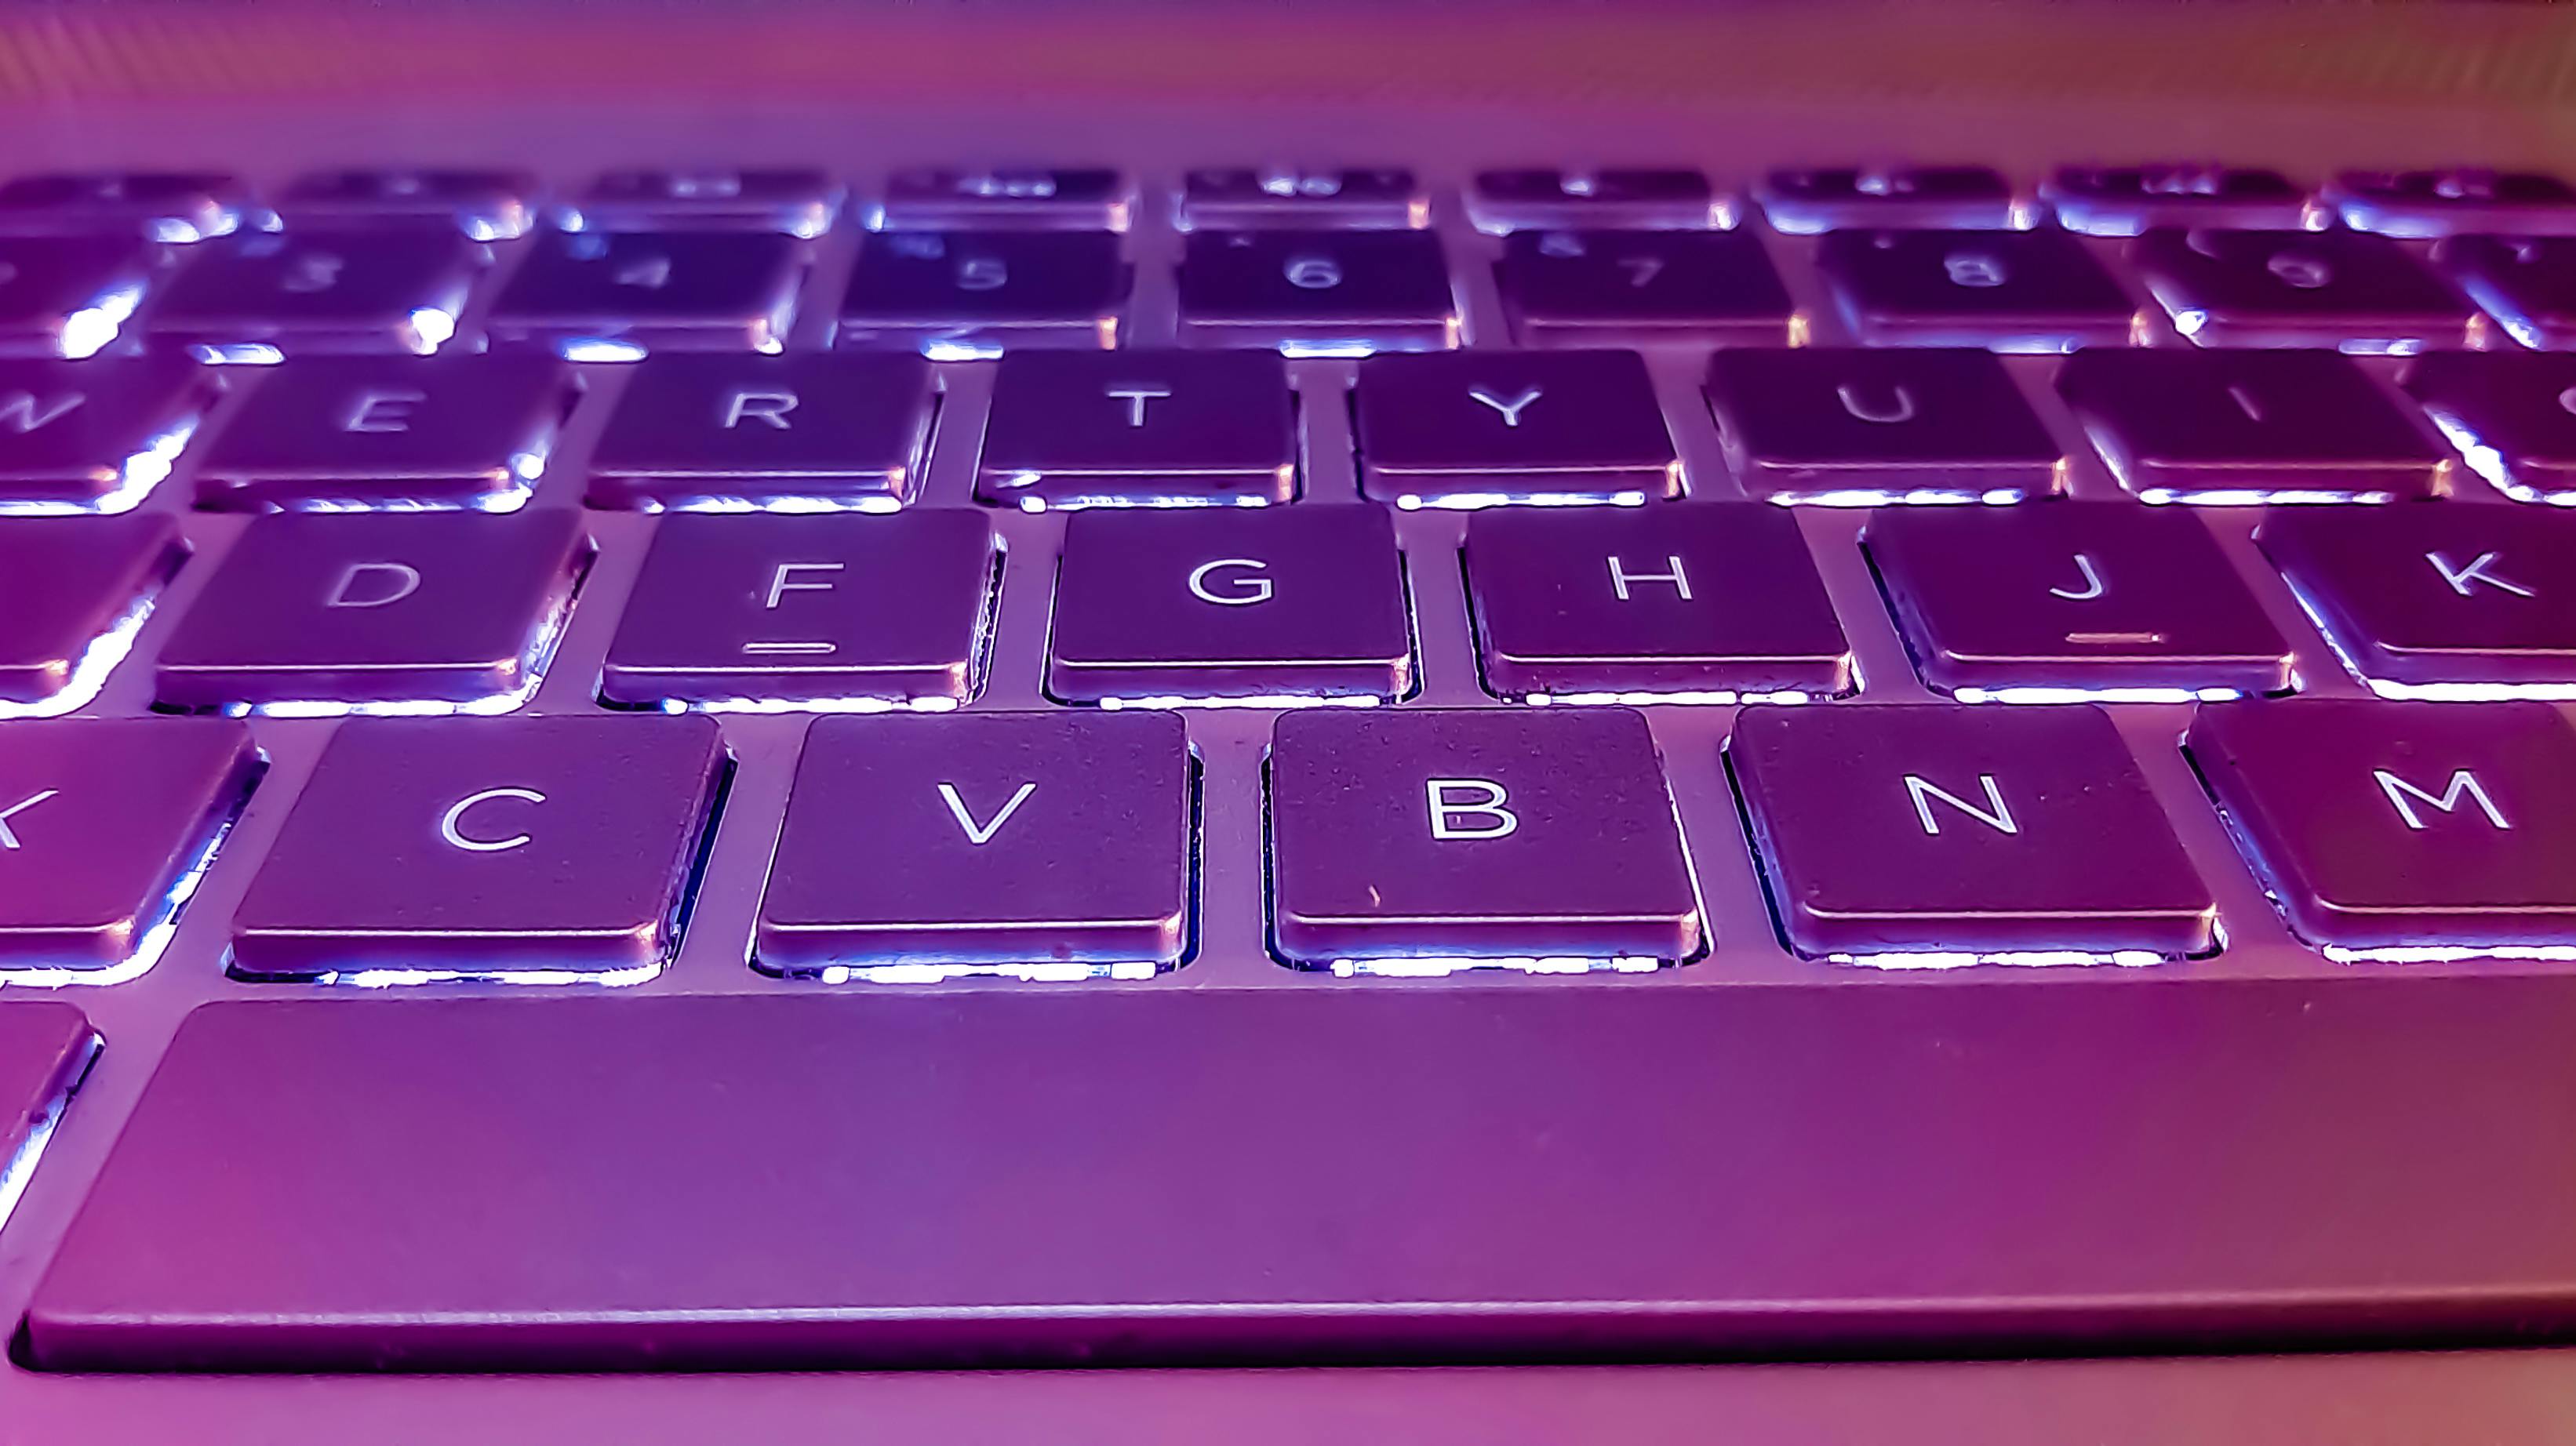 close-up-view-laptop-keyboard.jpg